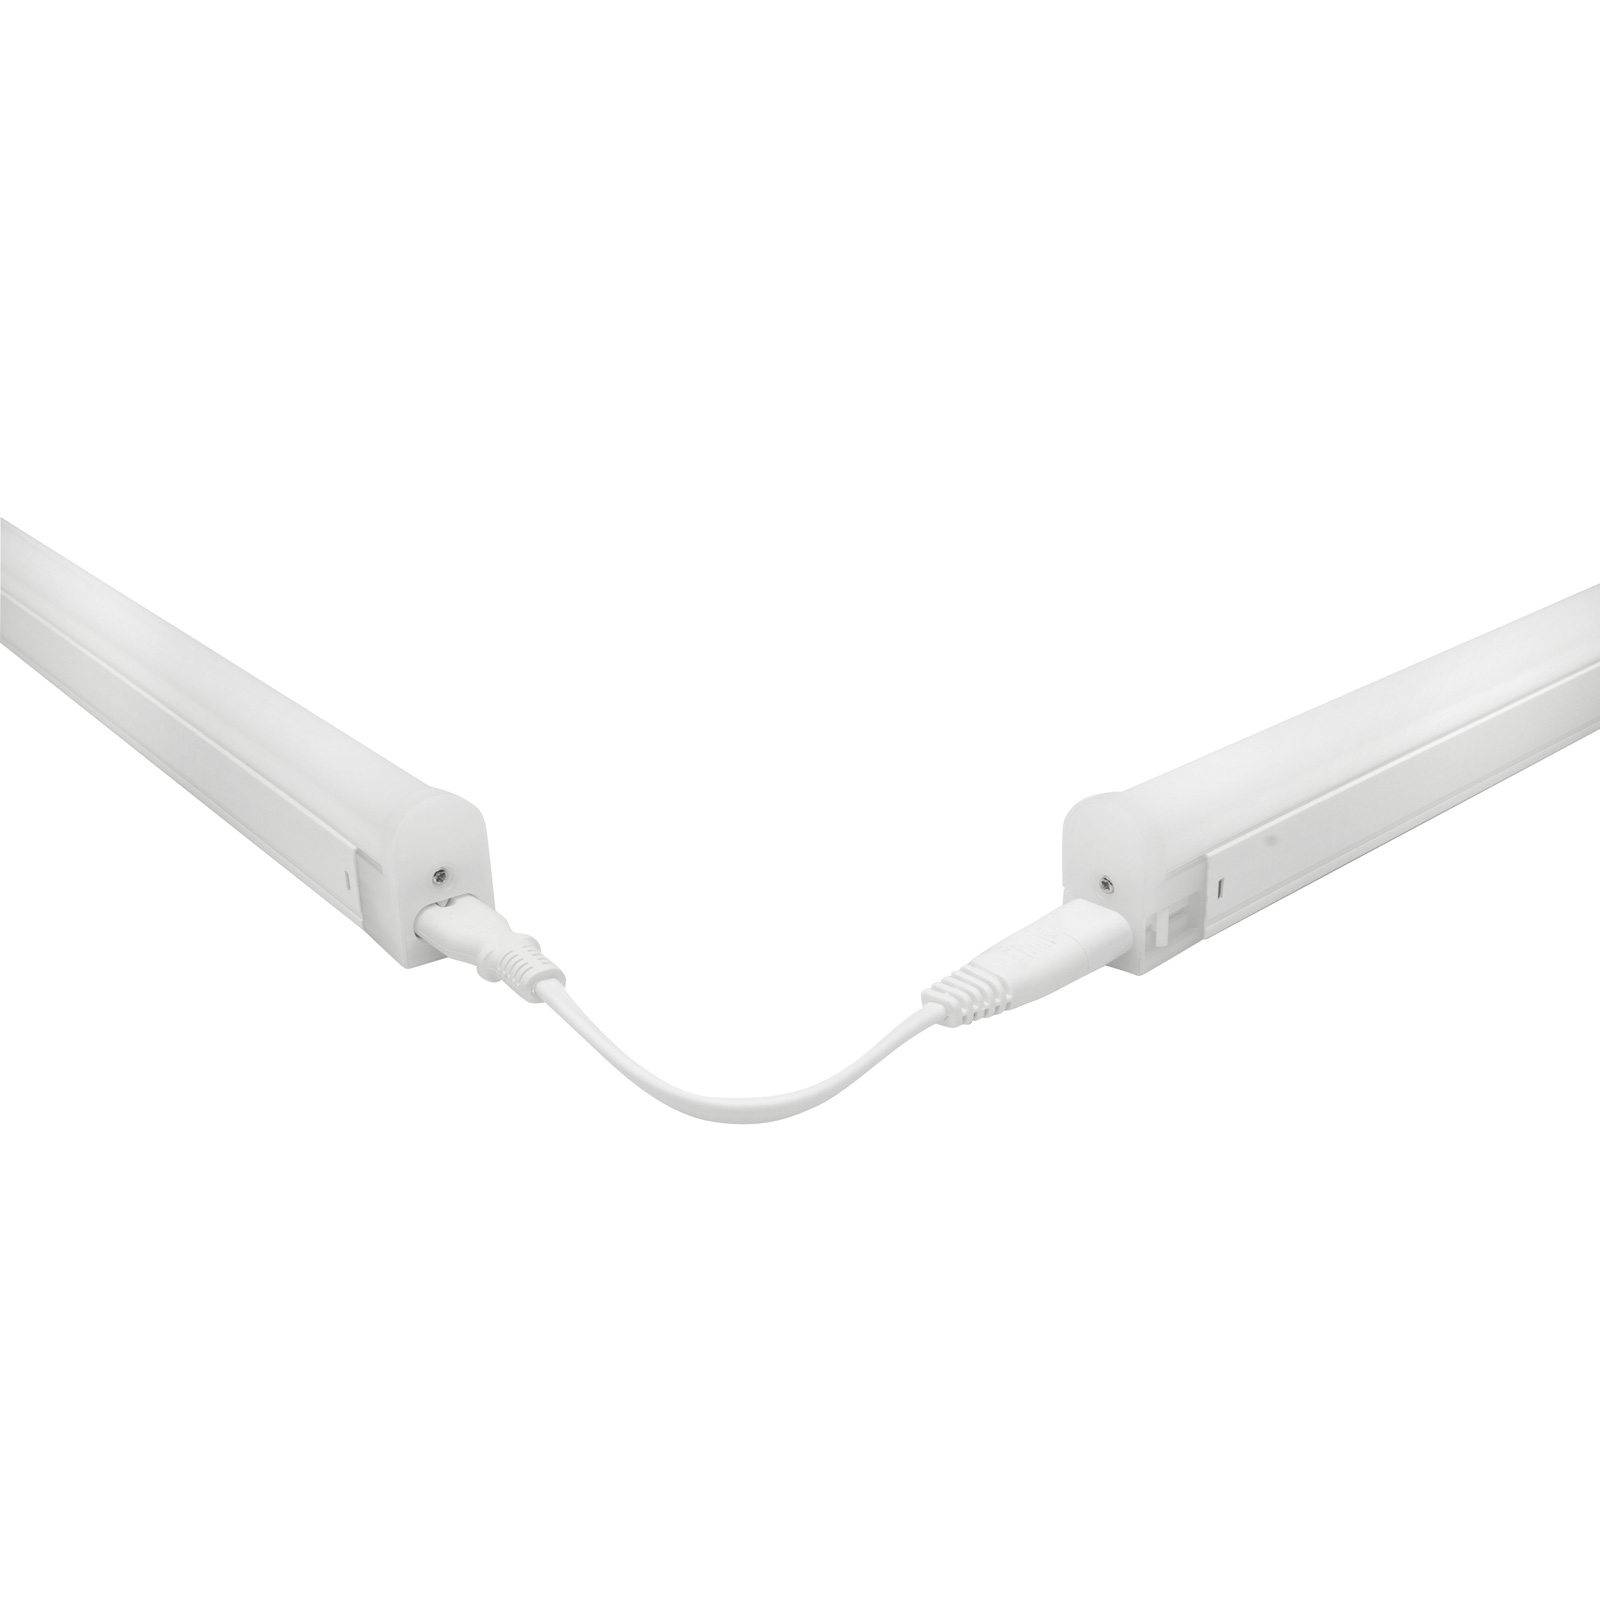 Připojovací kabel pro osvětlení Pino LED pod skříňku